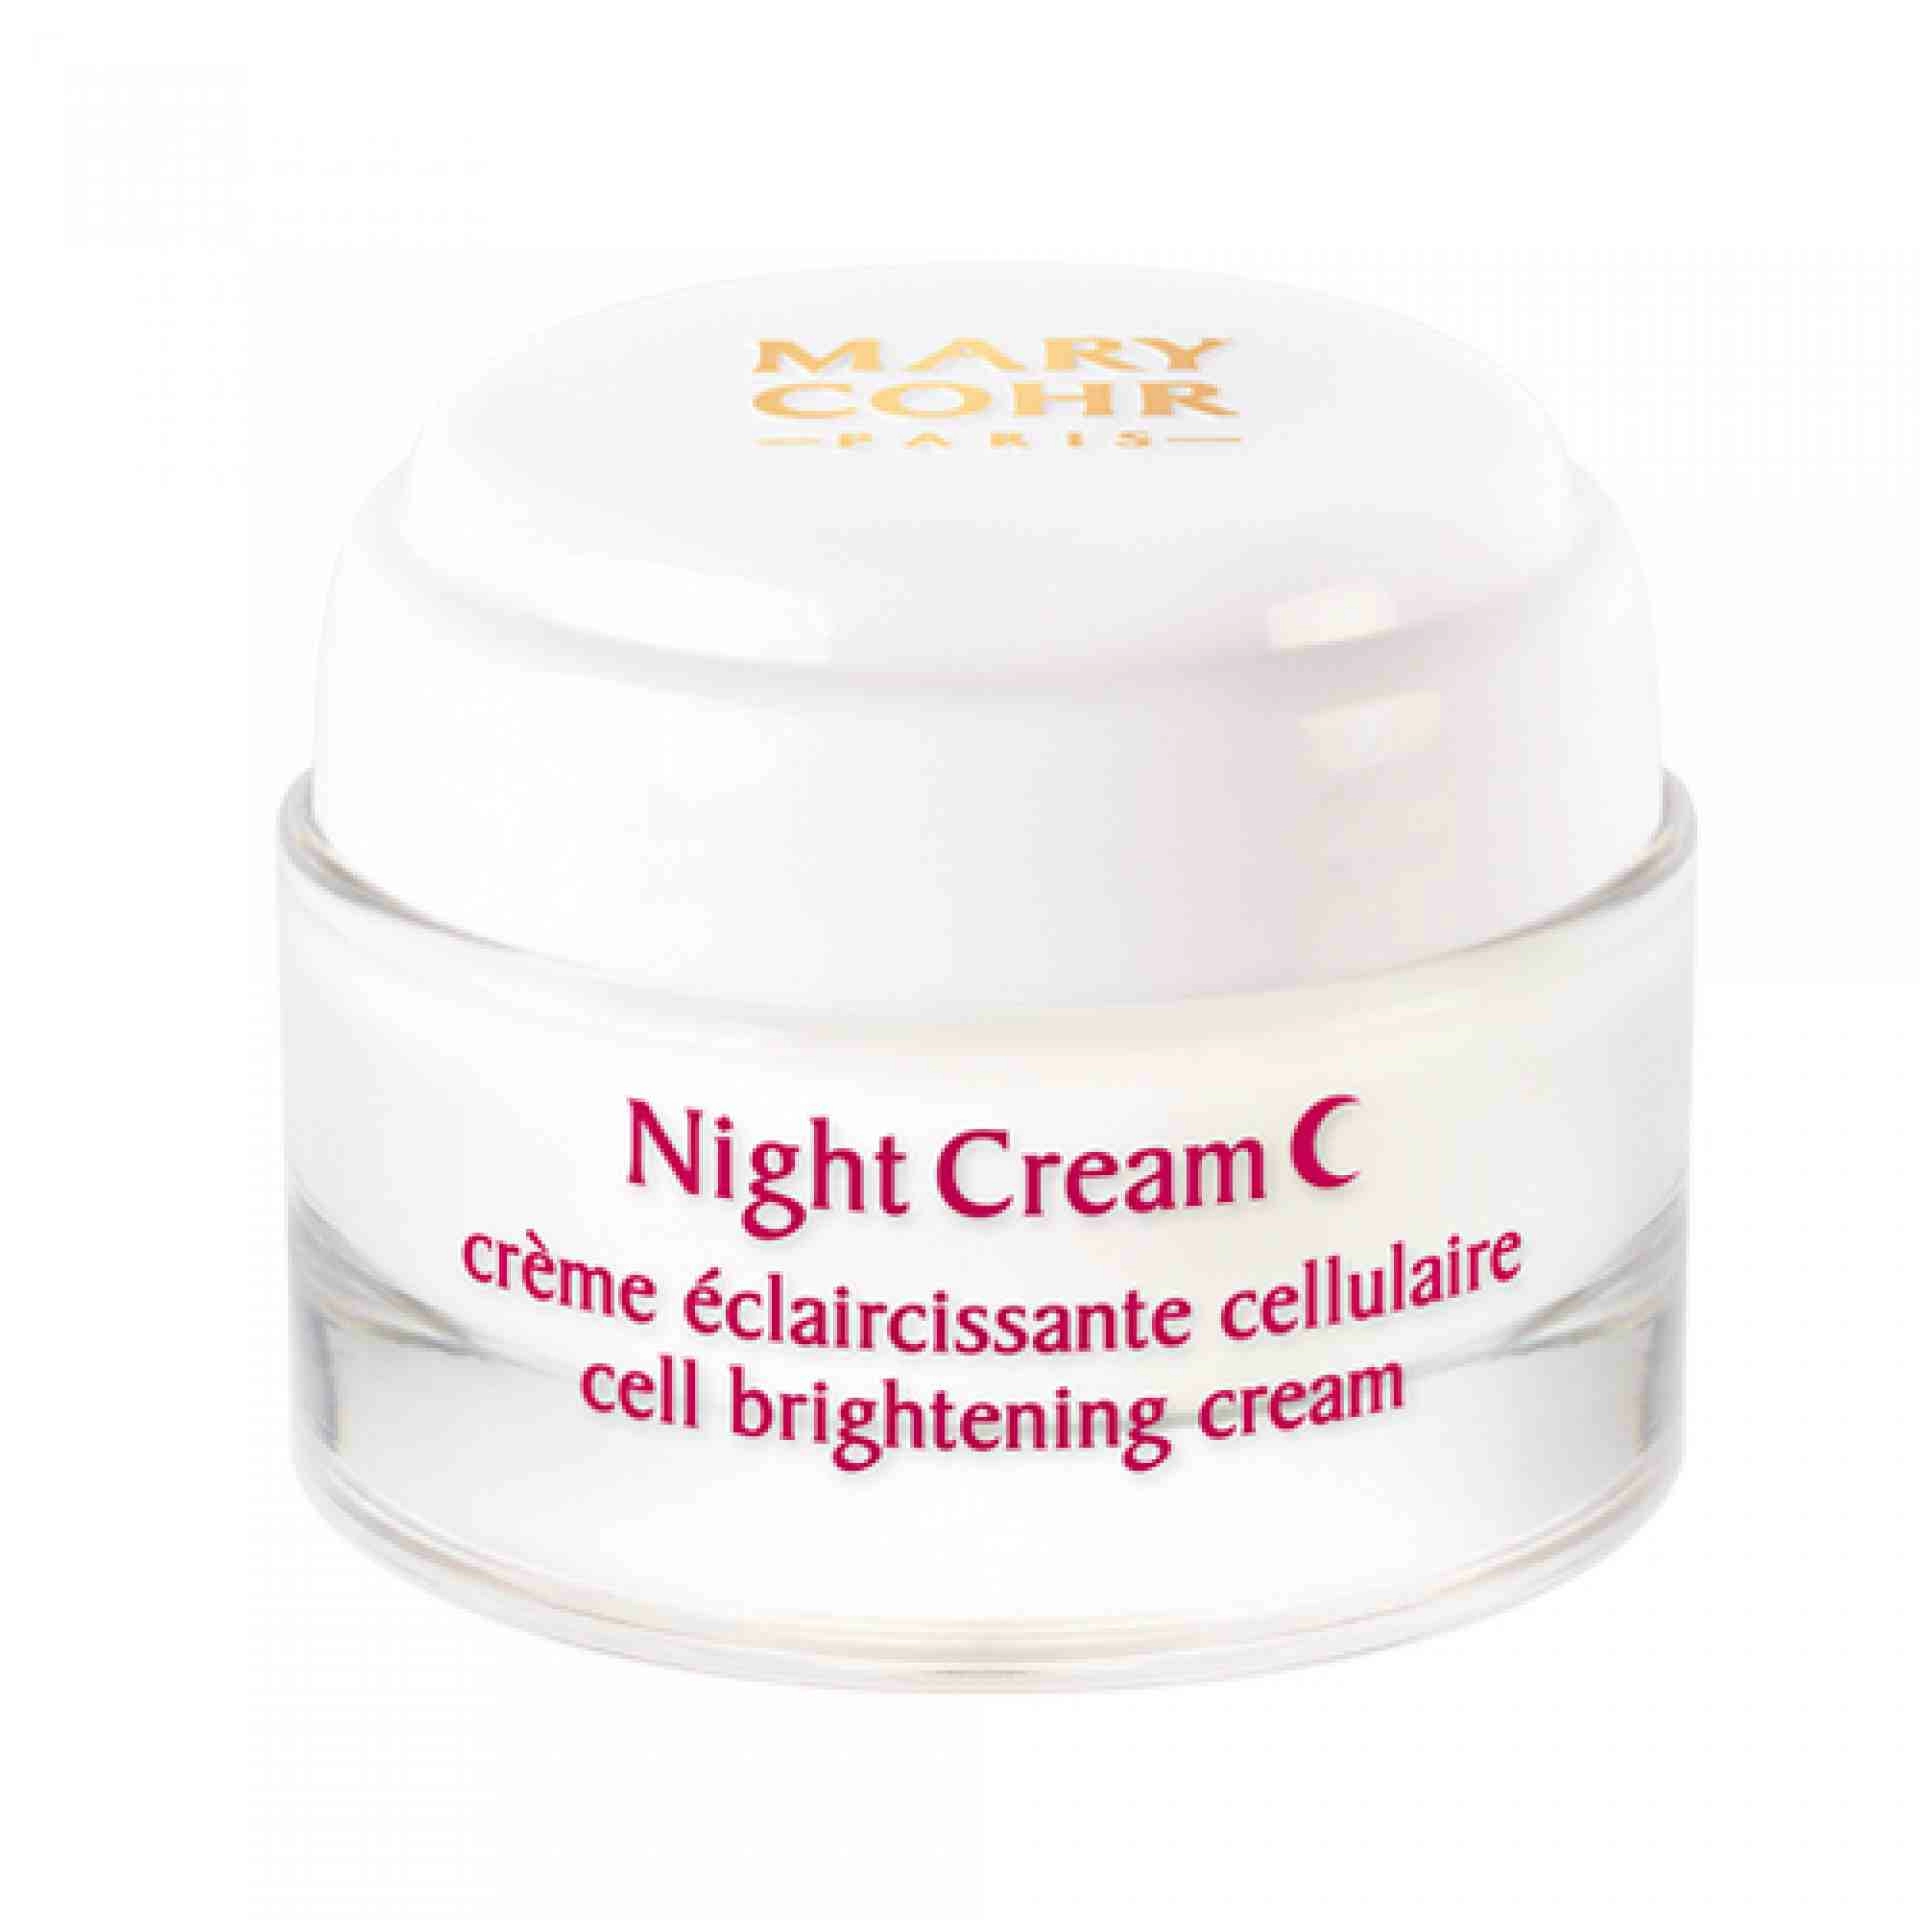 Night Cream Eclaircissante Cellulaire I Crema de Noche Iluminadora 50ml - Mary Cohr ®